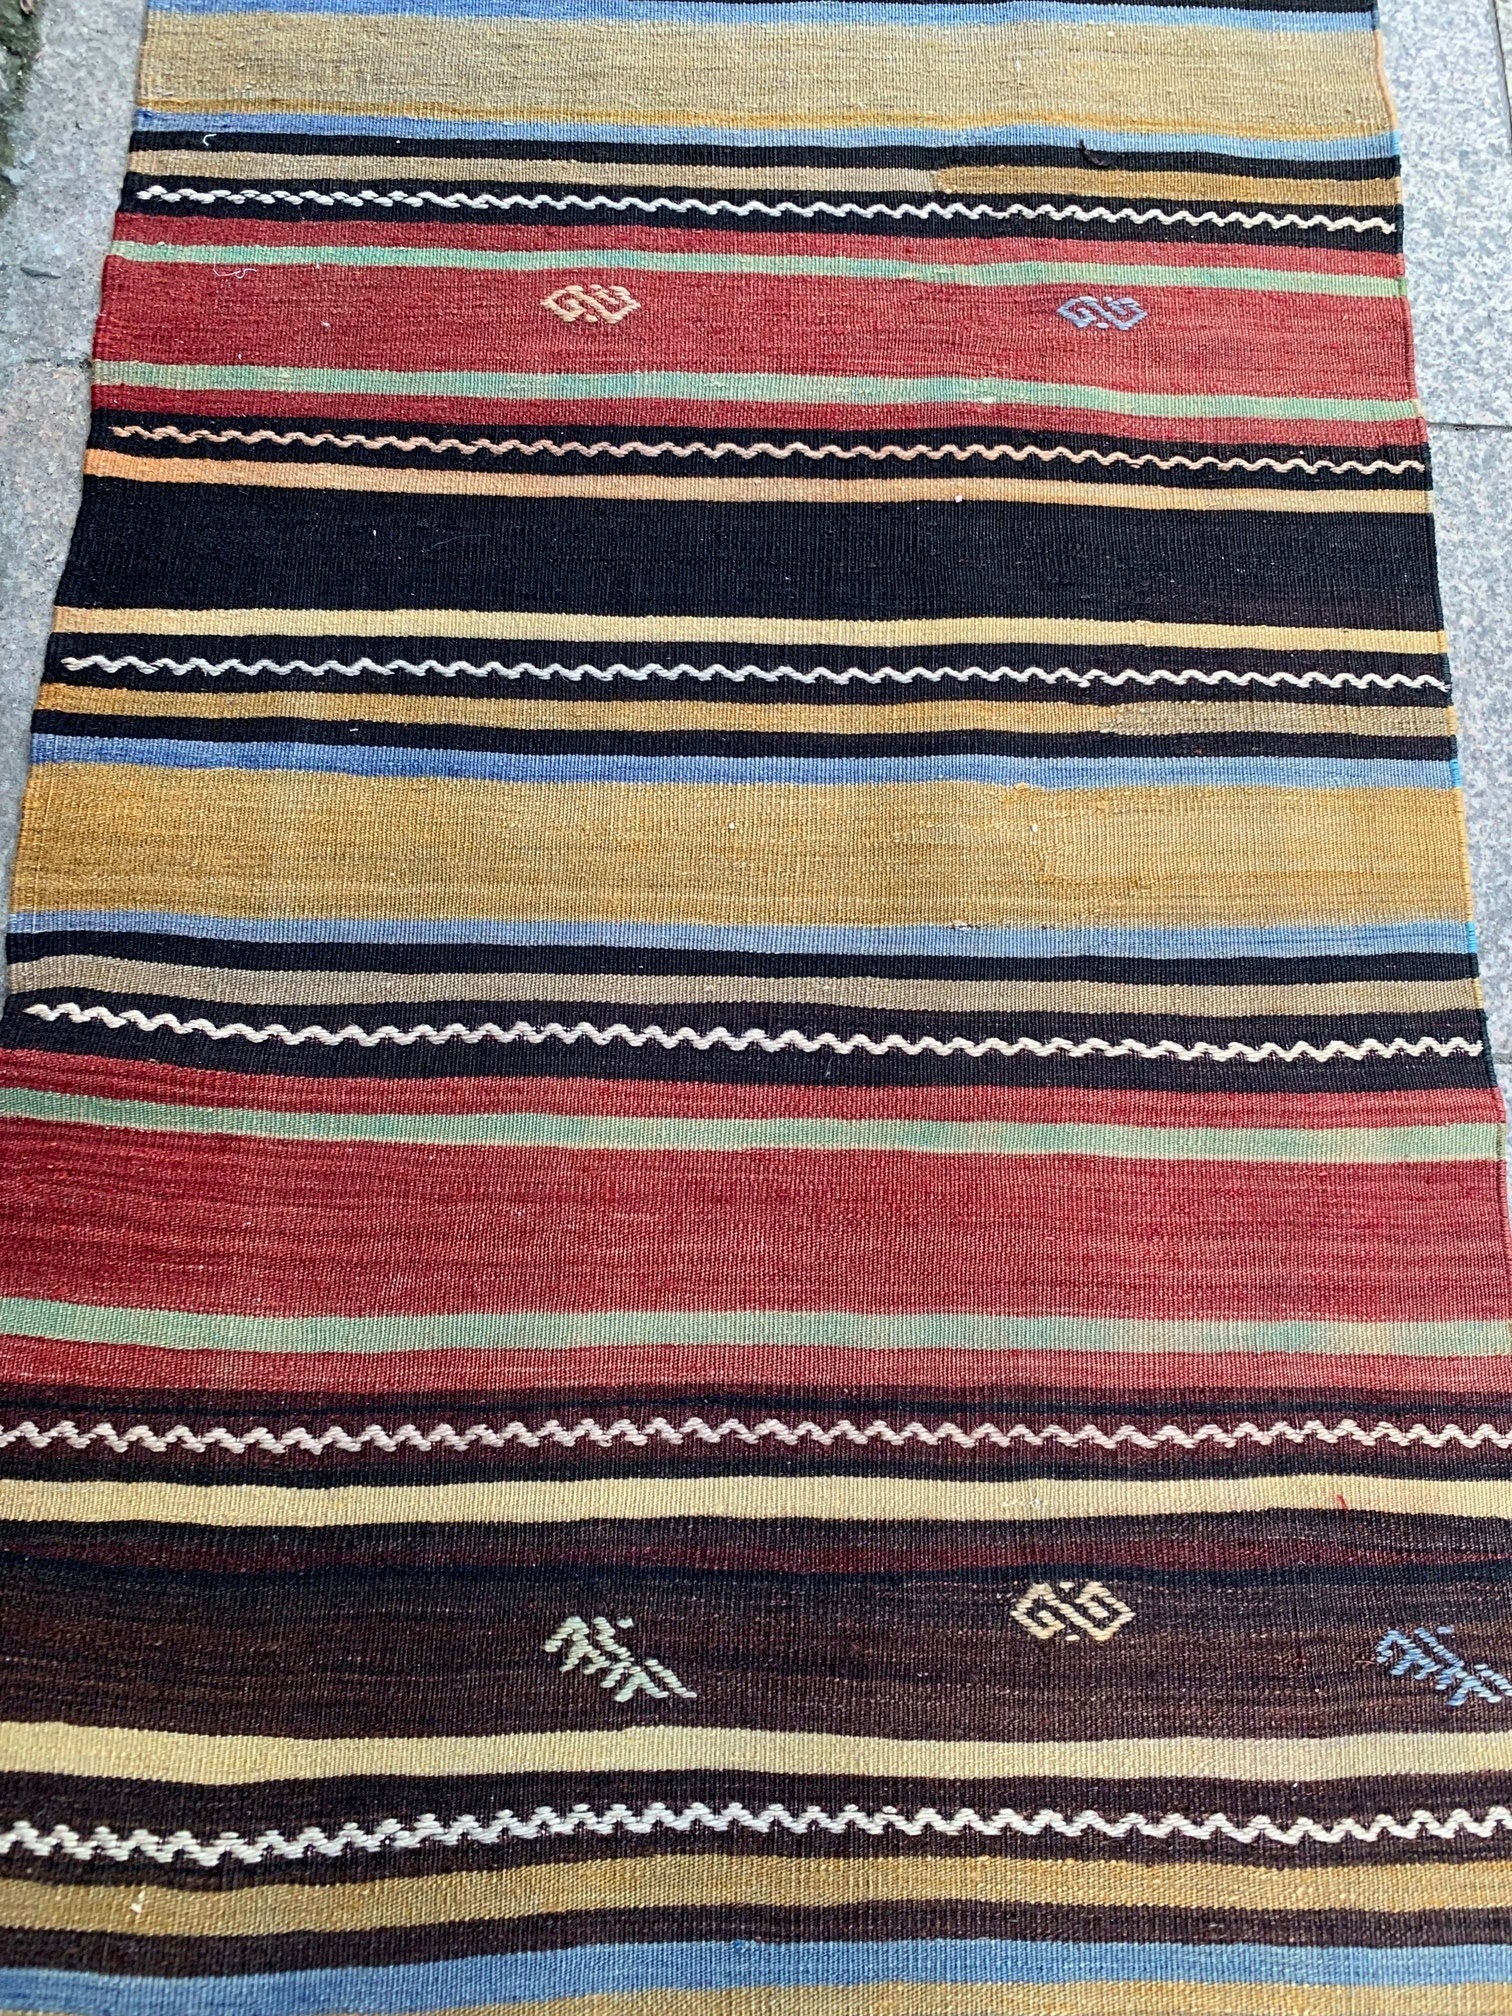 Striped kilim rug, 2.8x5.11 ft, K715